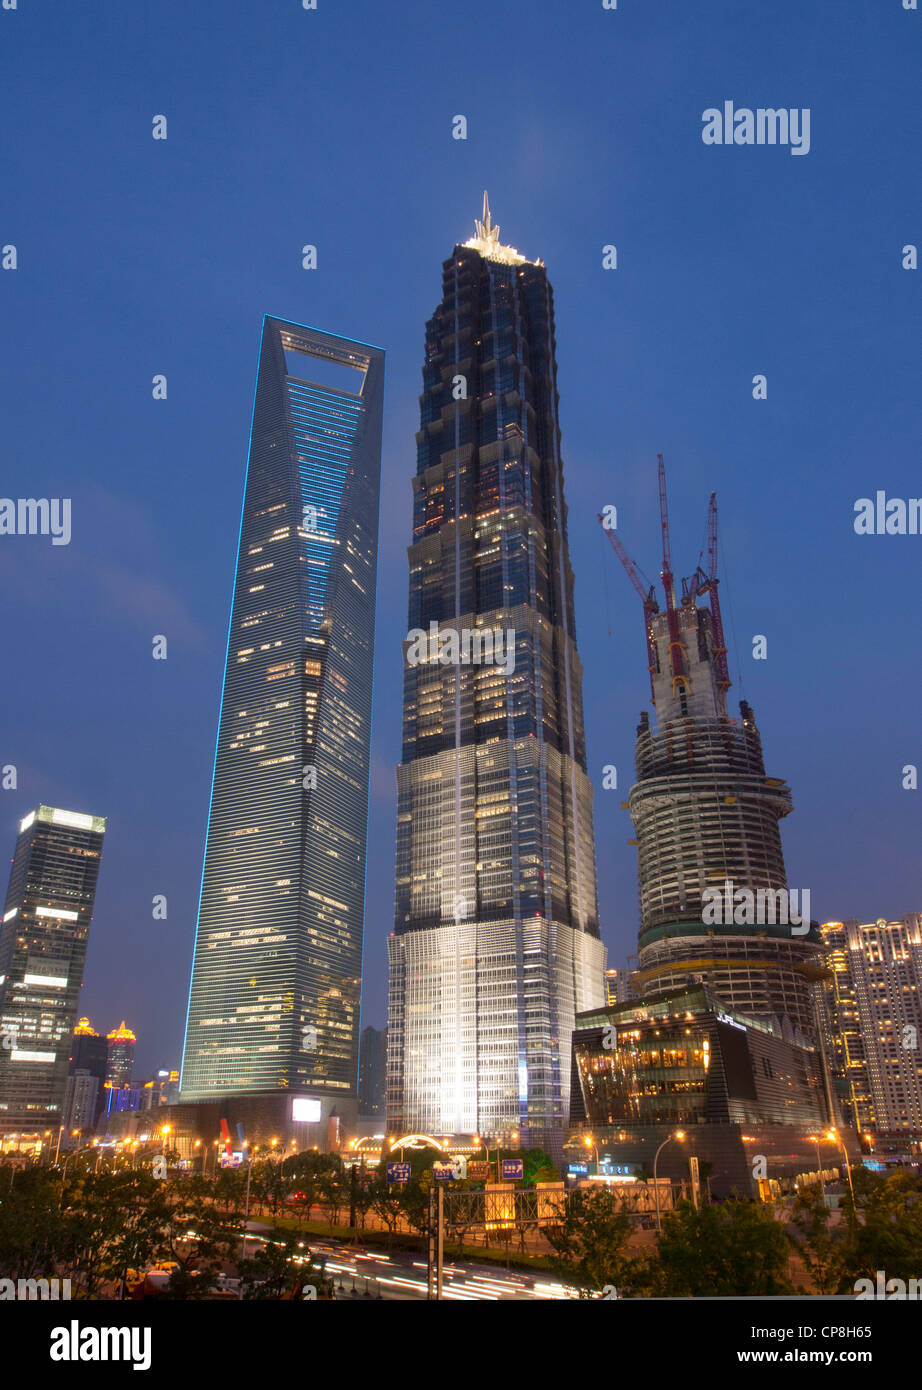 Vista de noche de la torre JinMao World Financial Center (centro) y en construcción en la torre de Shanghai Pudong Lujiazui Shanghai Foto de stock